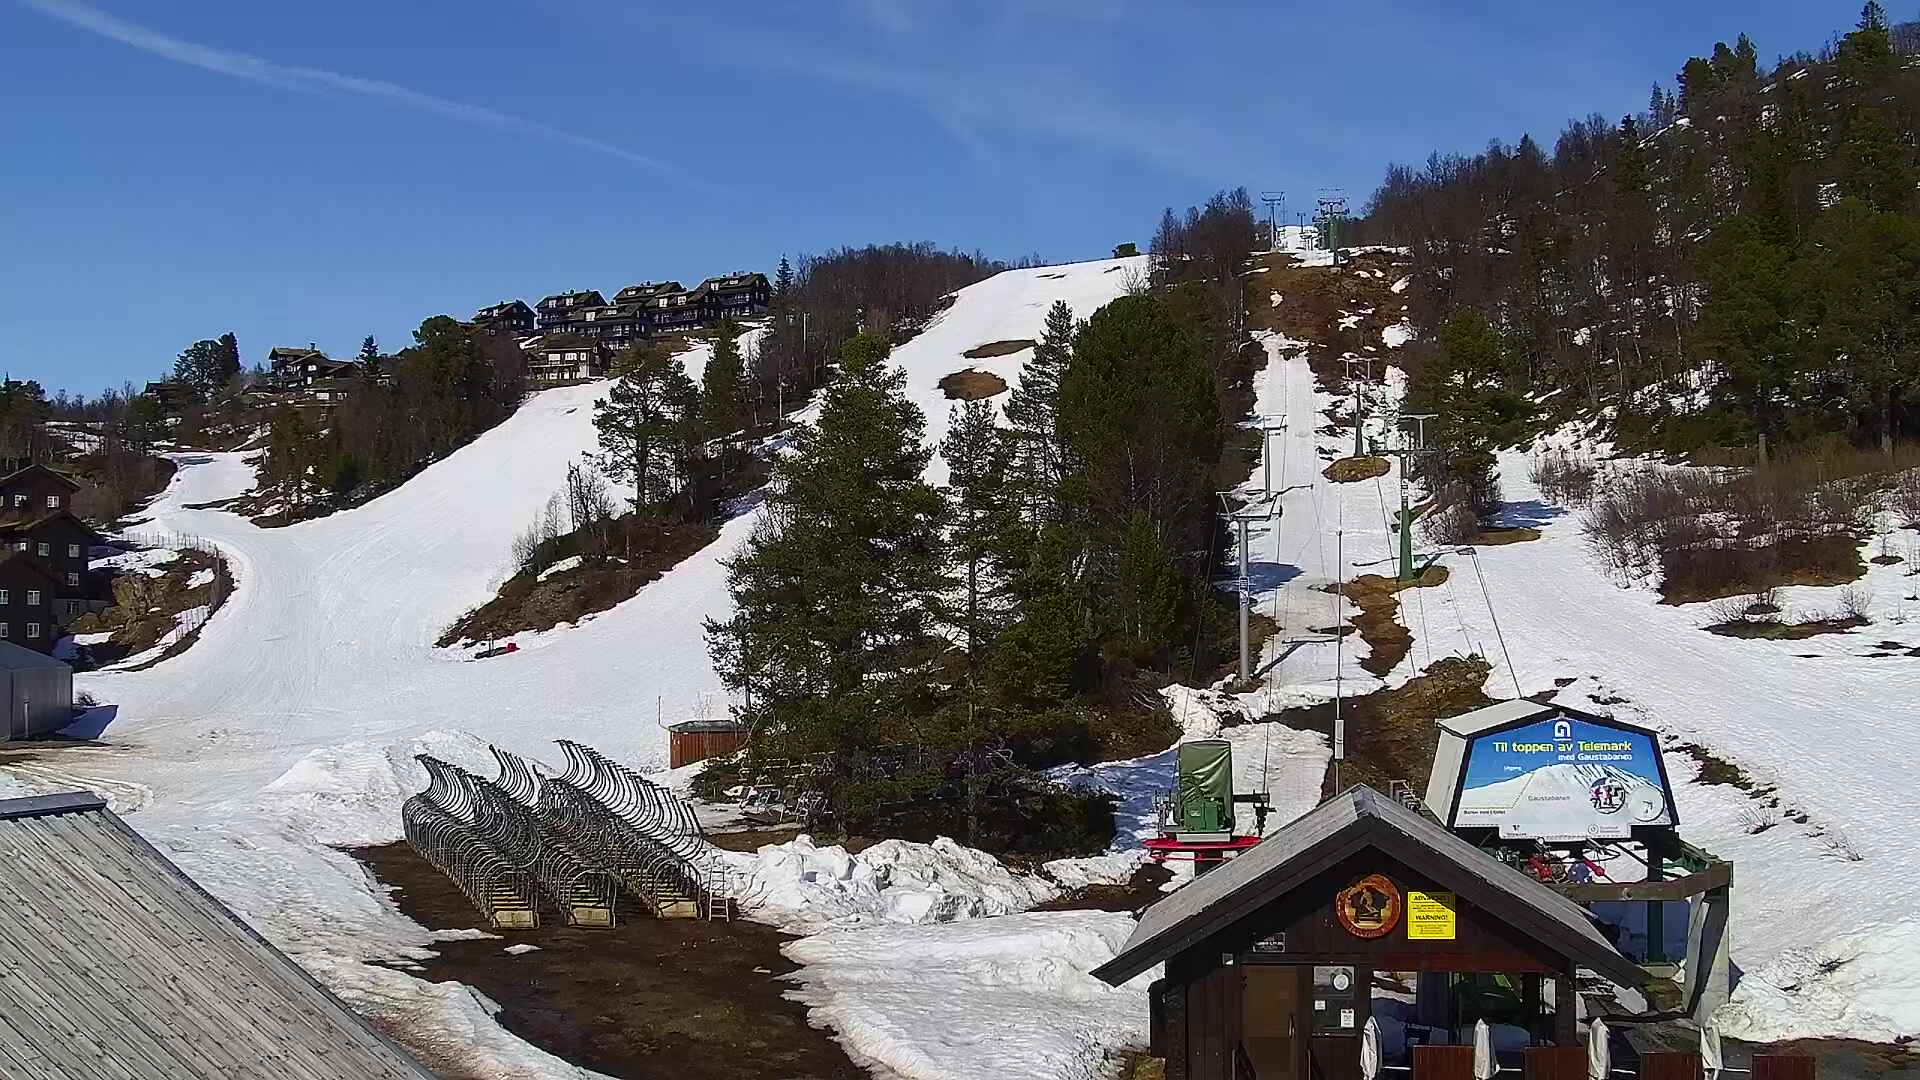 Rauland - ski slope; Tiurheisen; bottom